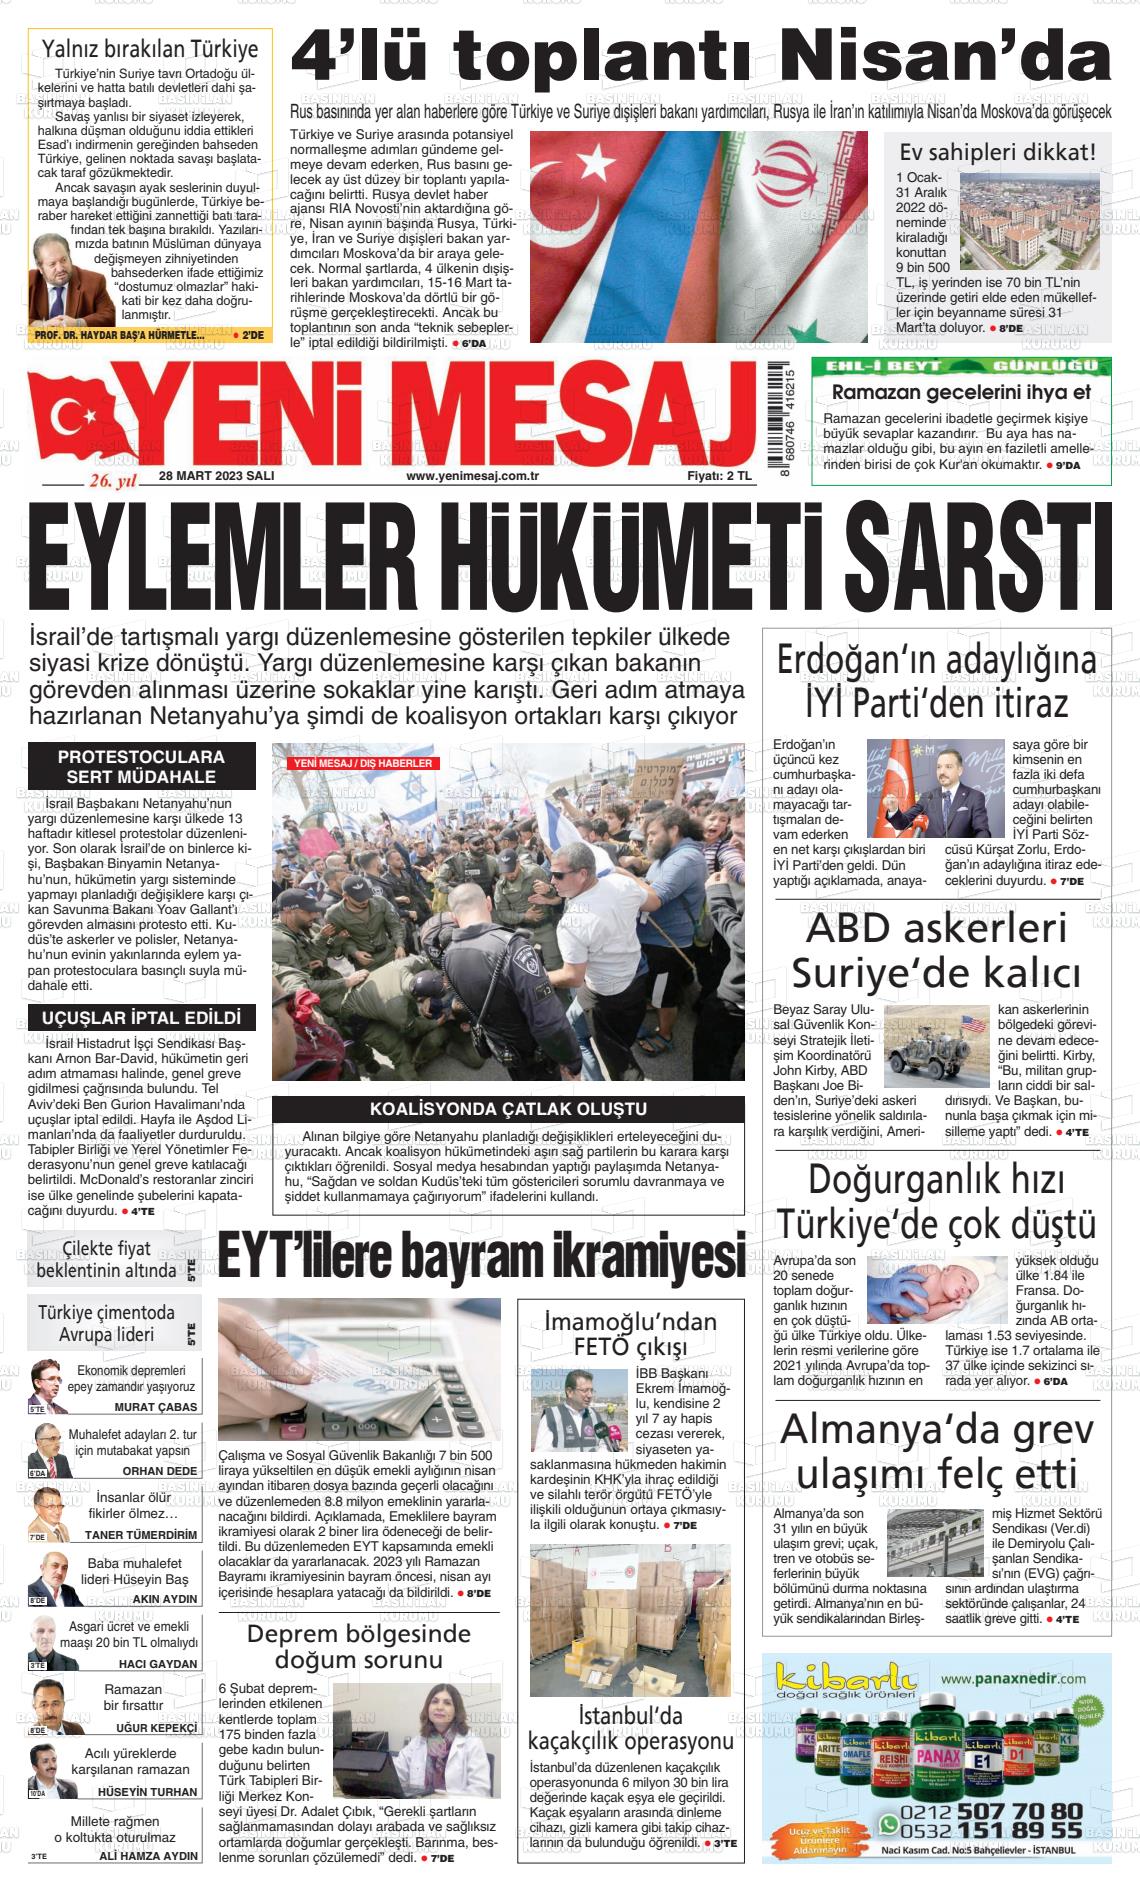 28 Mart 2023 Yeni Mesaj Gazete Manşeti